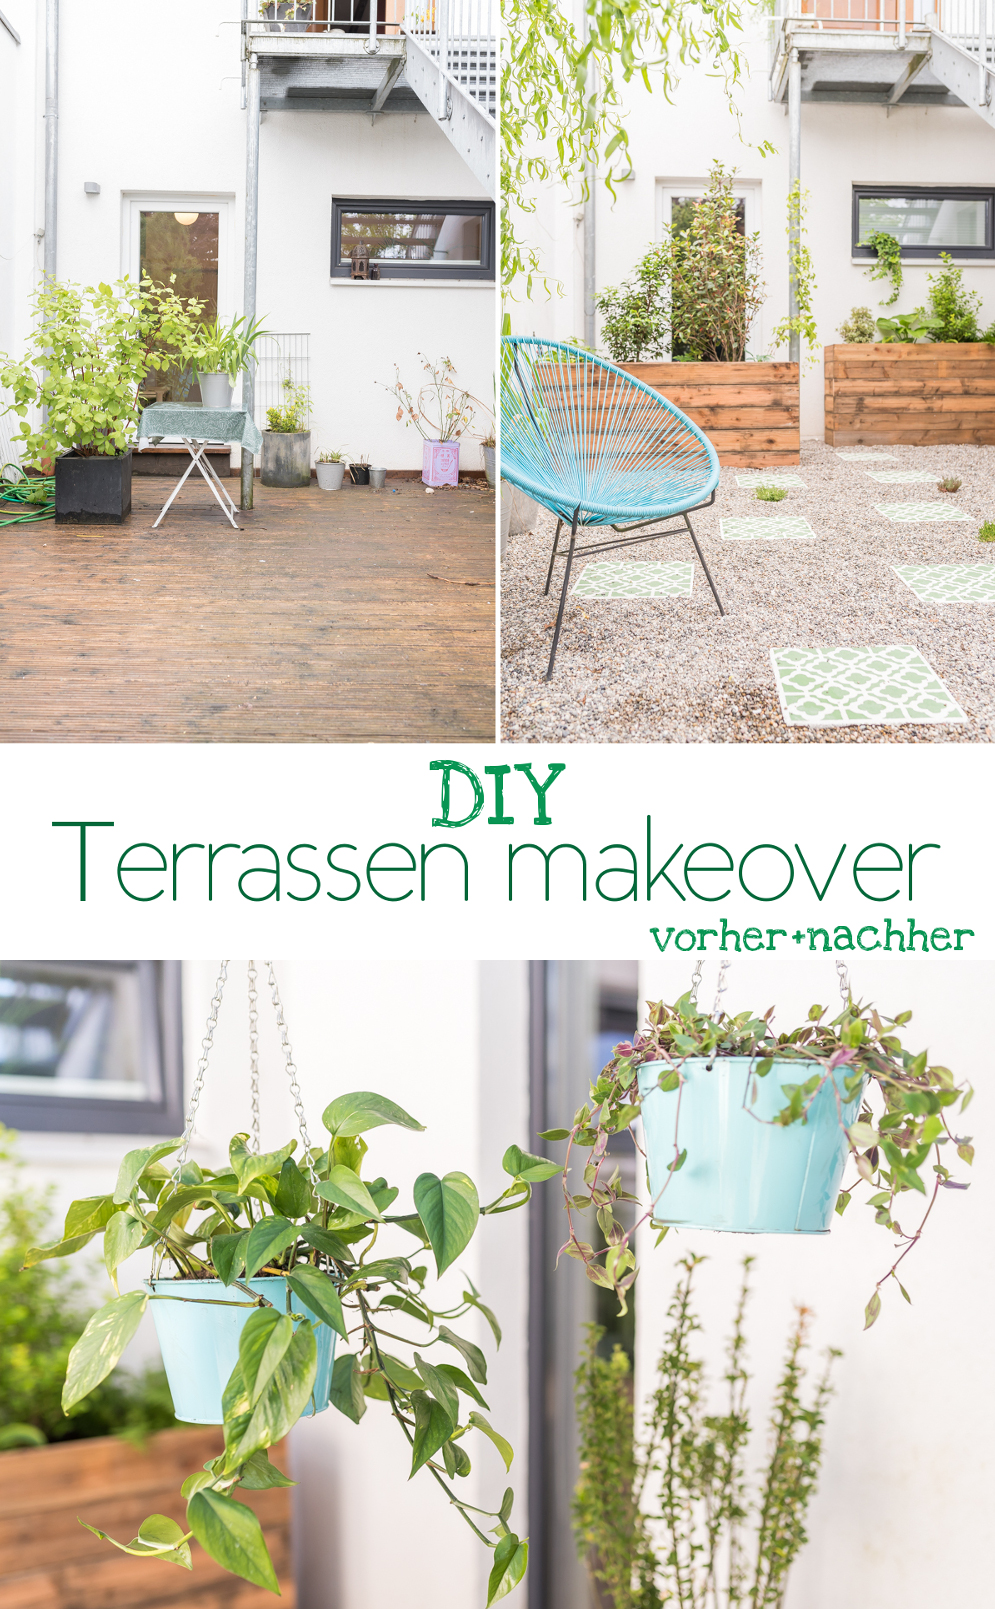 DIY Inspiration für ein Terrassen makeover in Schattenlage mit vorher nachher Bildern und selbst gebauten DIY upcycling Pflanzkübeln